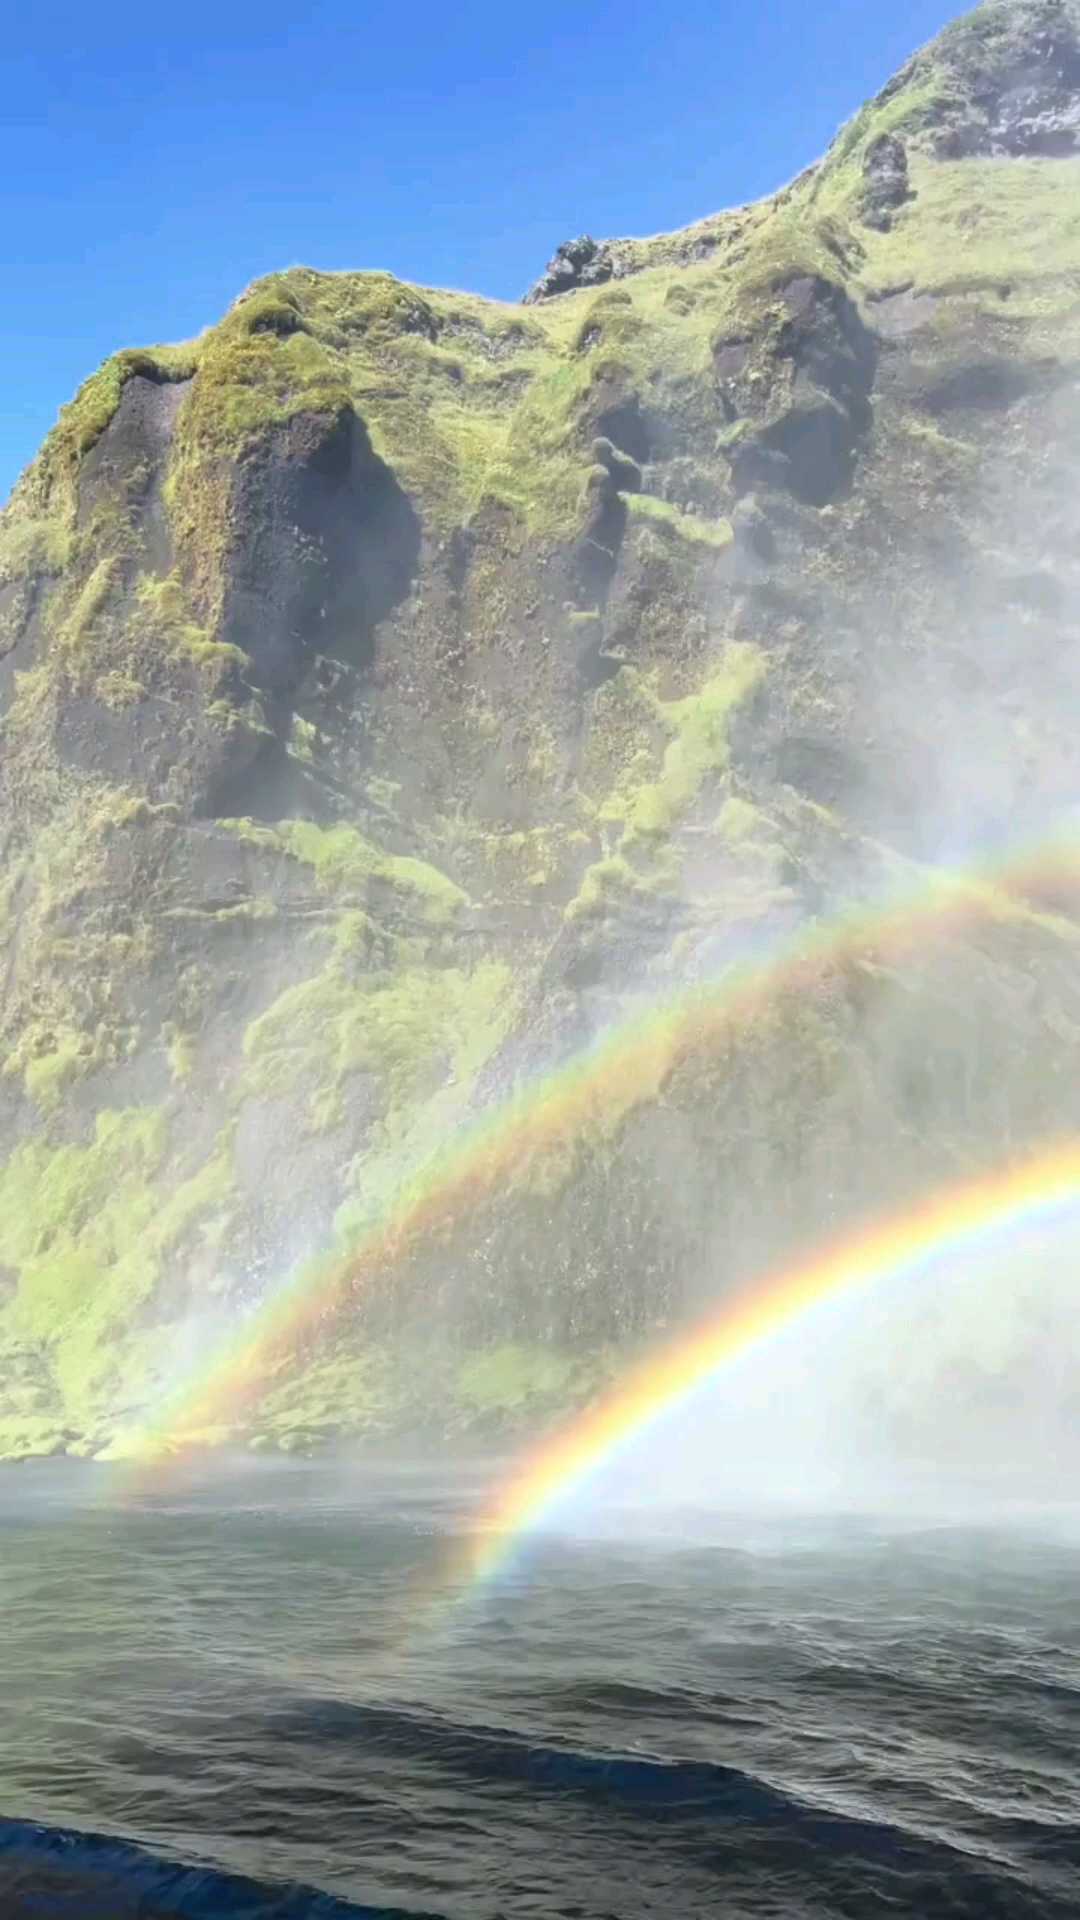 冰岛斯科加瀑布